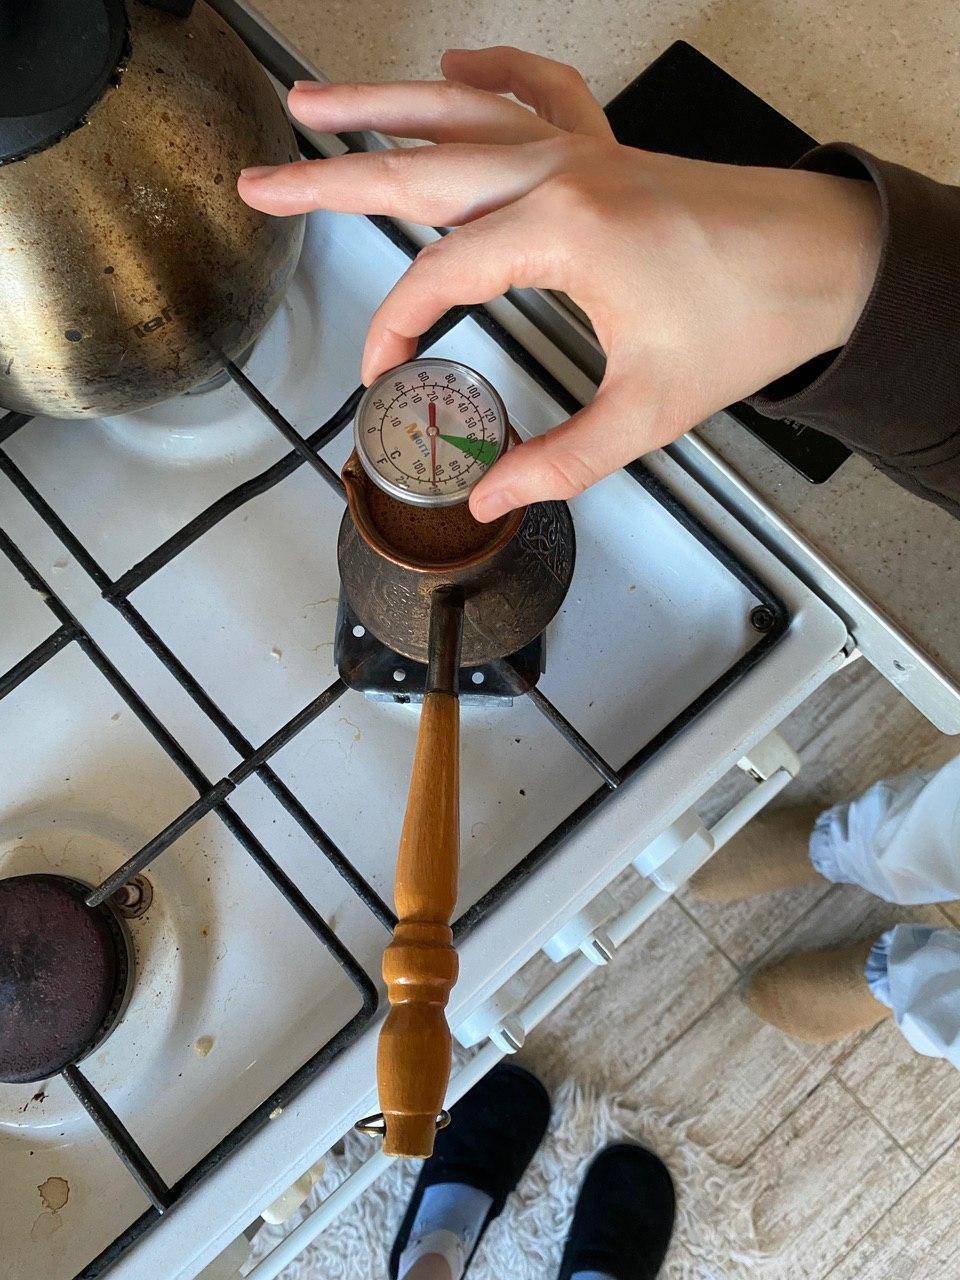 Как варить зерновой кофе в турке